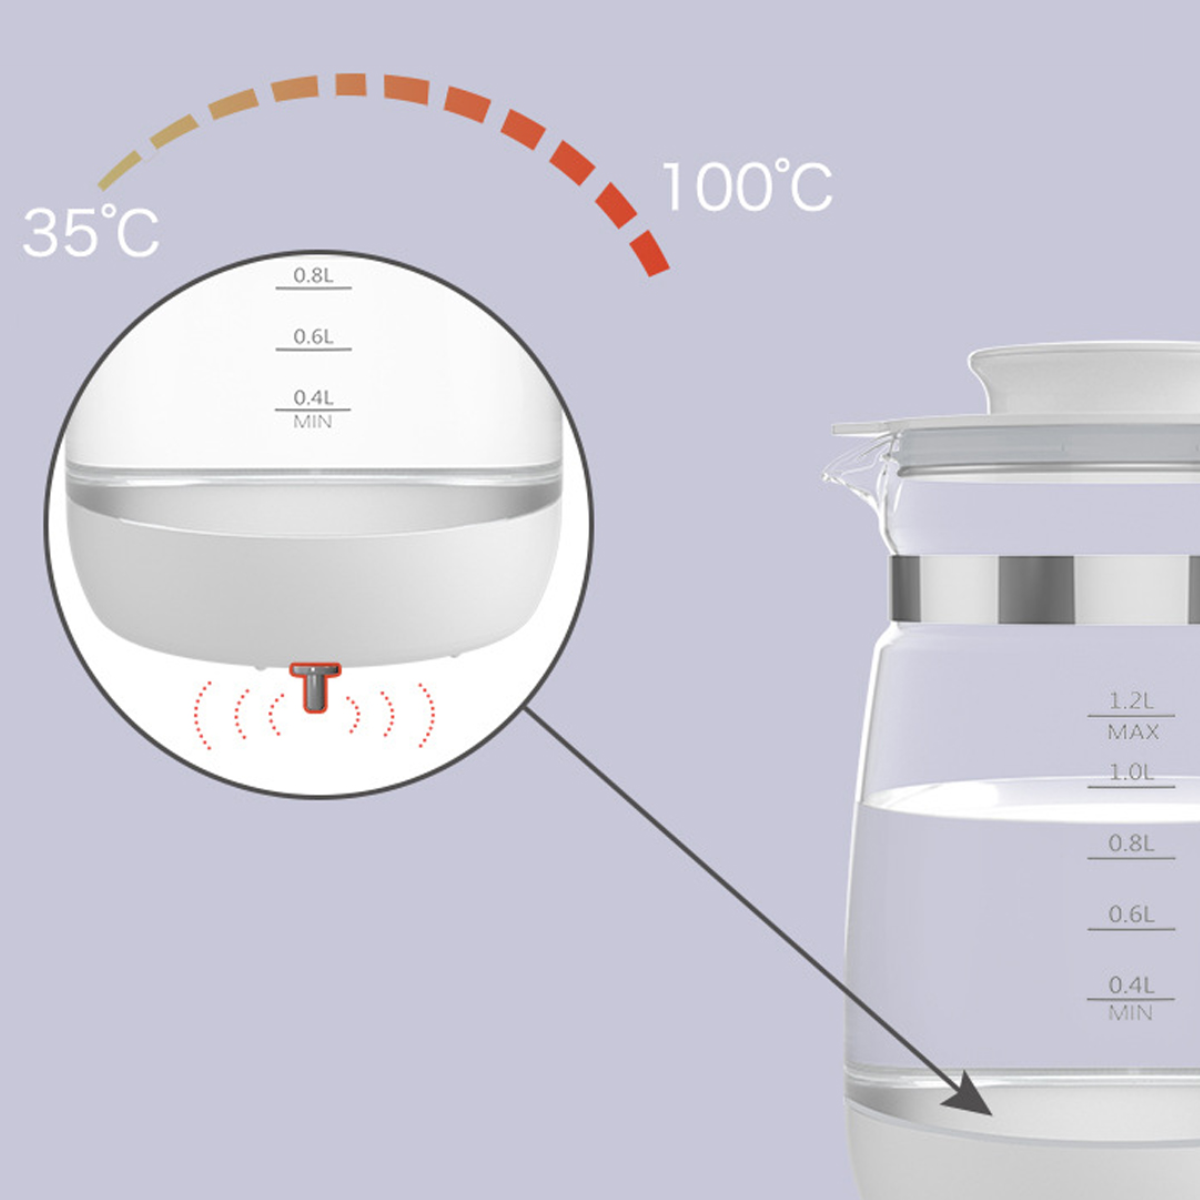 24hThermostatischer sicheres Wasserkocher, 360° UWOT präzise Temperaturregelung, Milchregler: Material, drehbar,Weiß Weiß